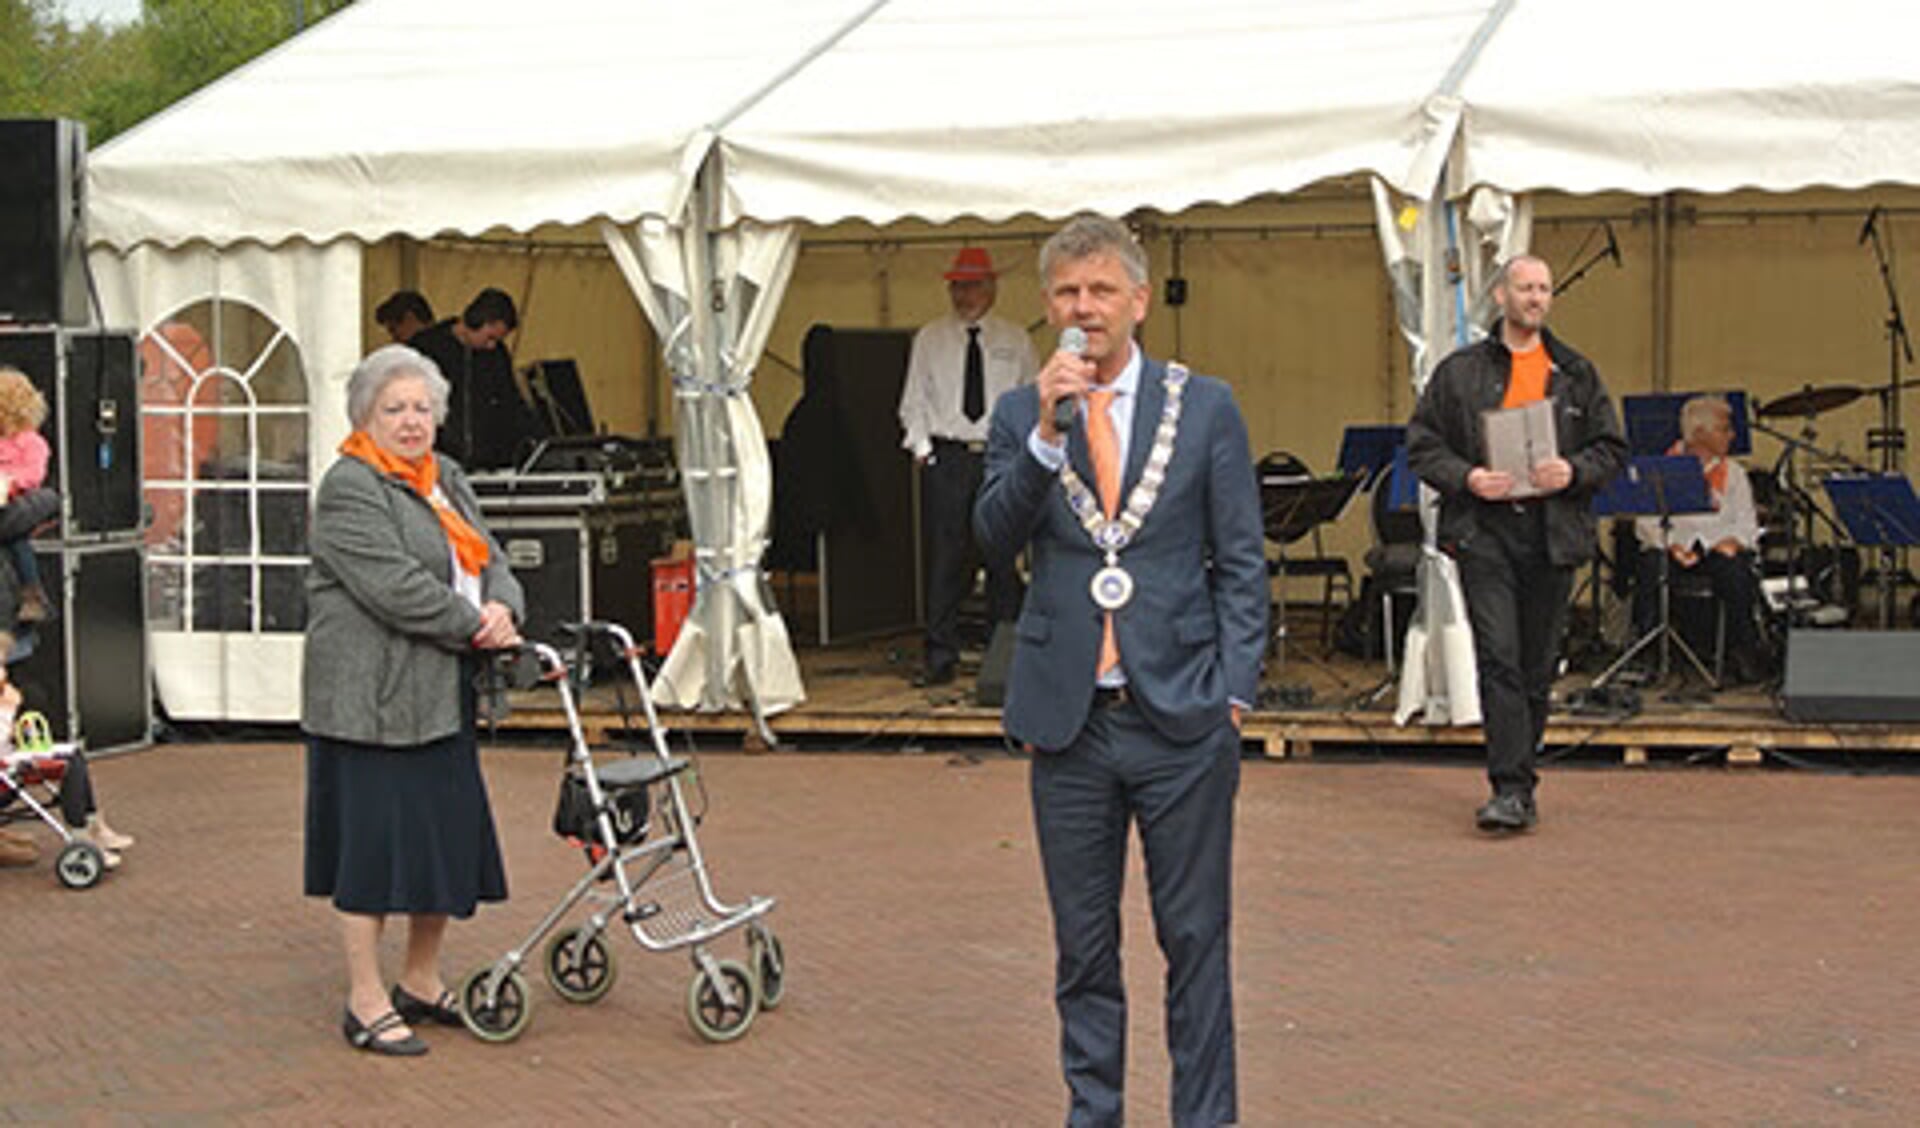 Burgemeester Smit van Beverwijk zal net als in 2018 de festiviteiten op Koningsdag openen.